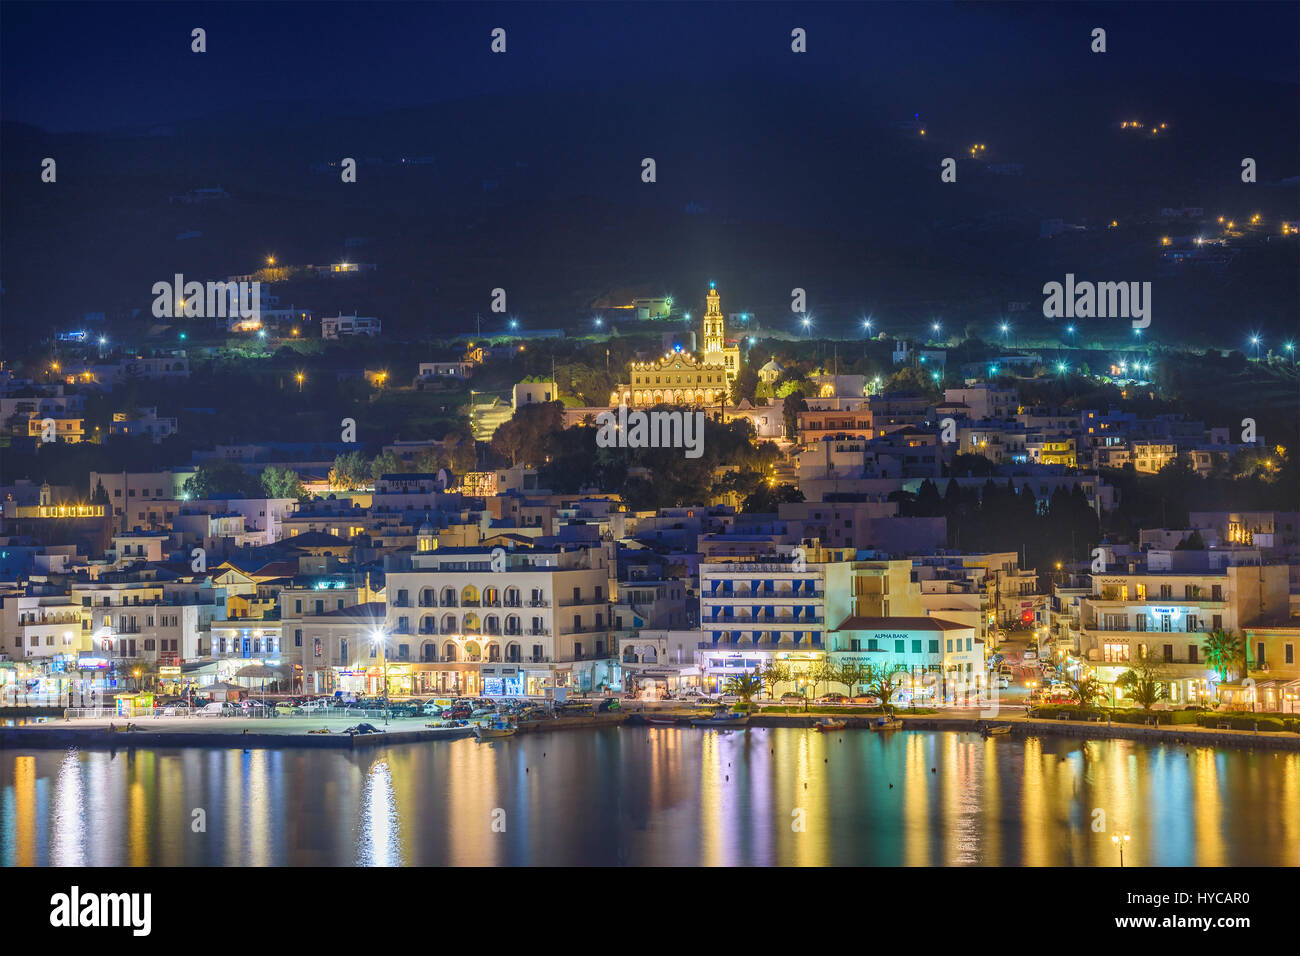 Panorama Blick auf Tinos Stadt. Zentriert die berühmte Kirche der Jungfrau Maria in der Nacht beleuchtet. Tinos Insel Kykladen, Griechenland. Stockfoto